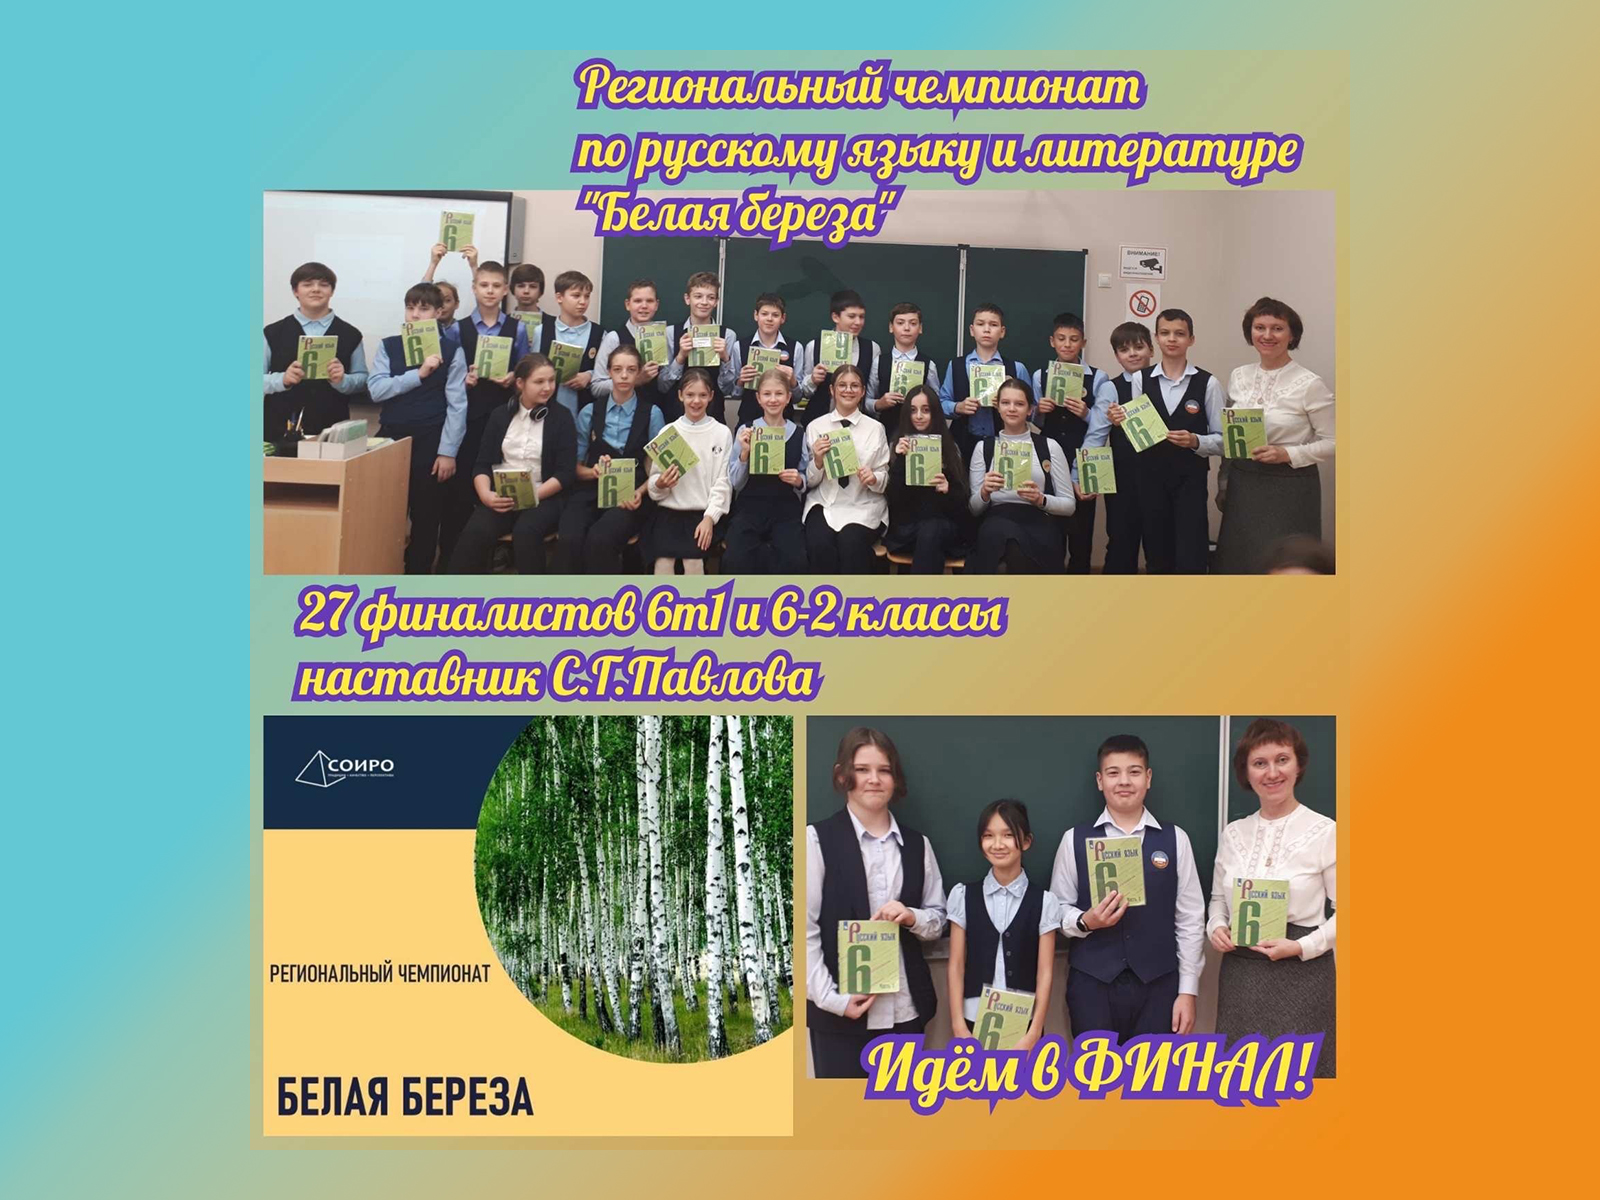 29 лицеистов стали финалистами конкурса по русскому языку «Белая берёза».